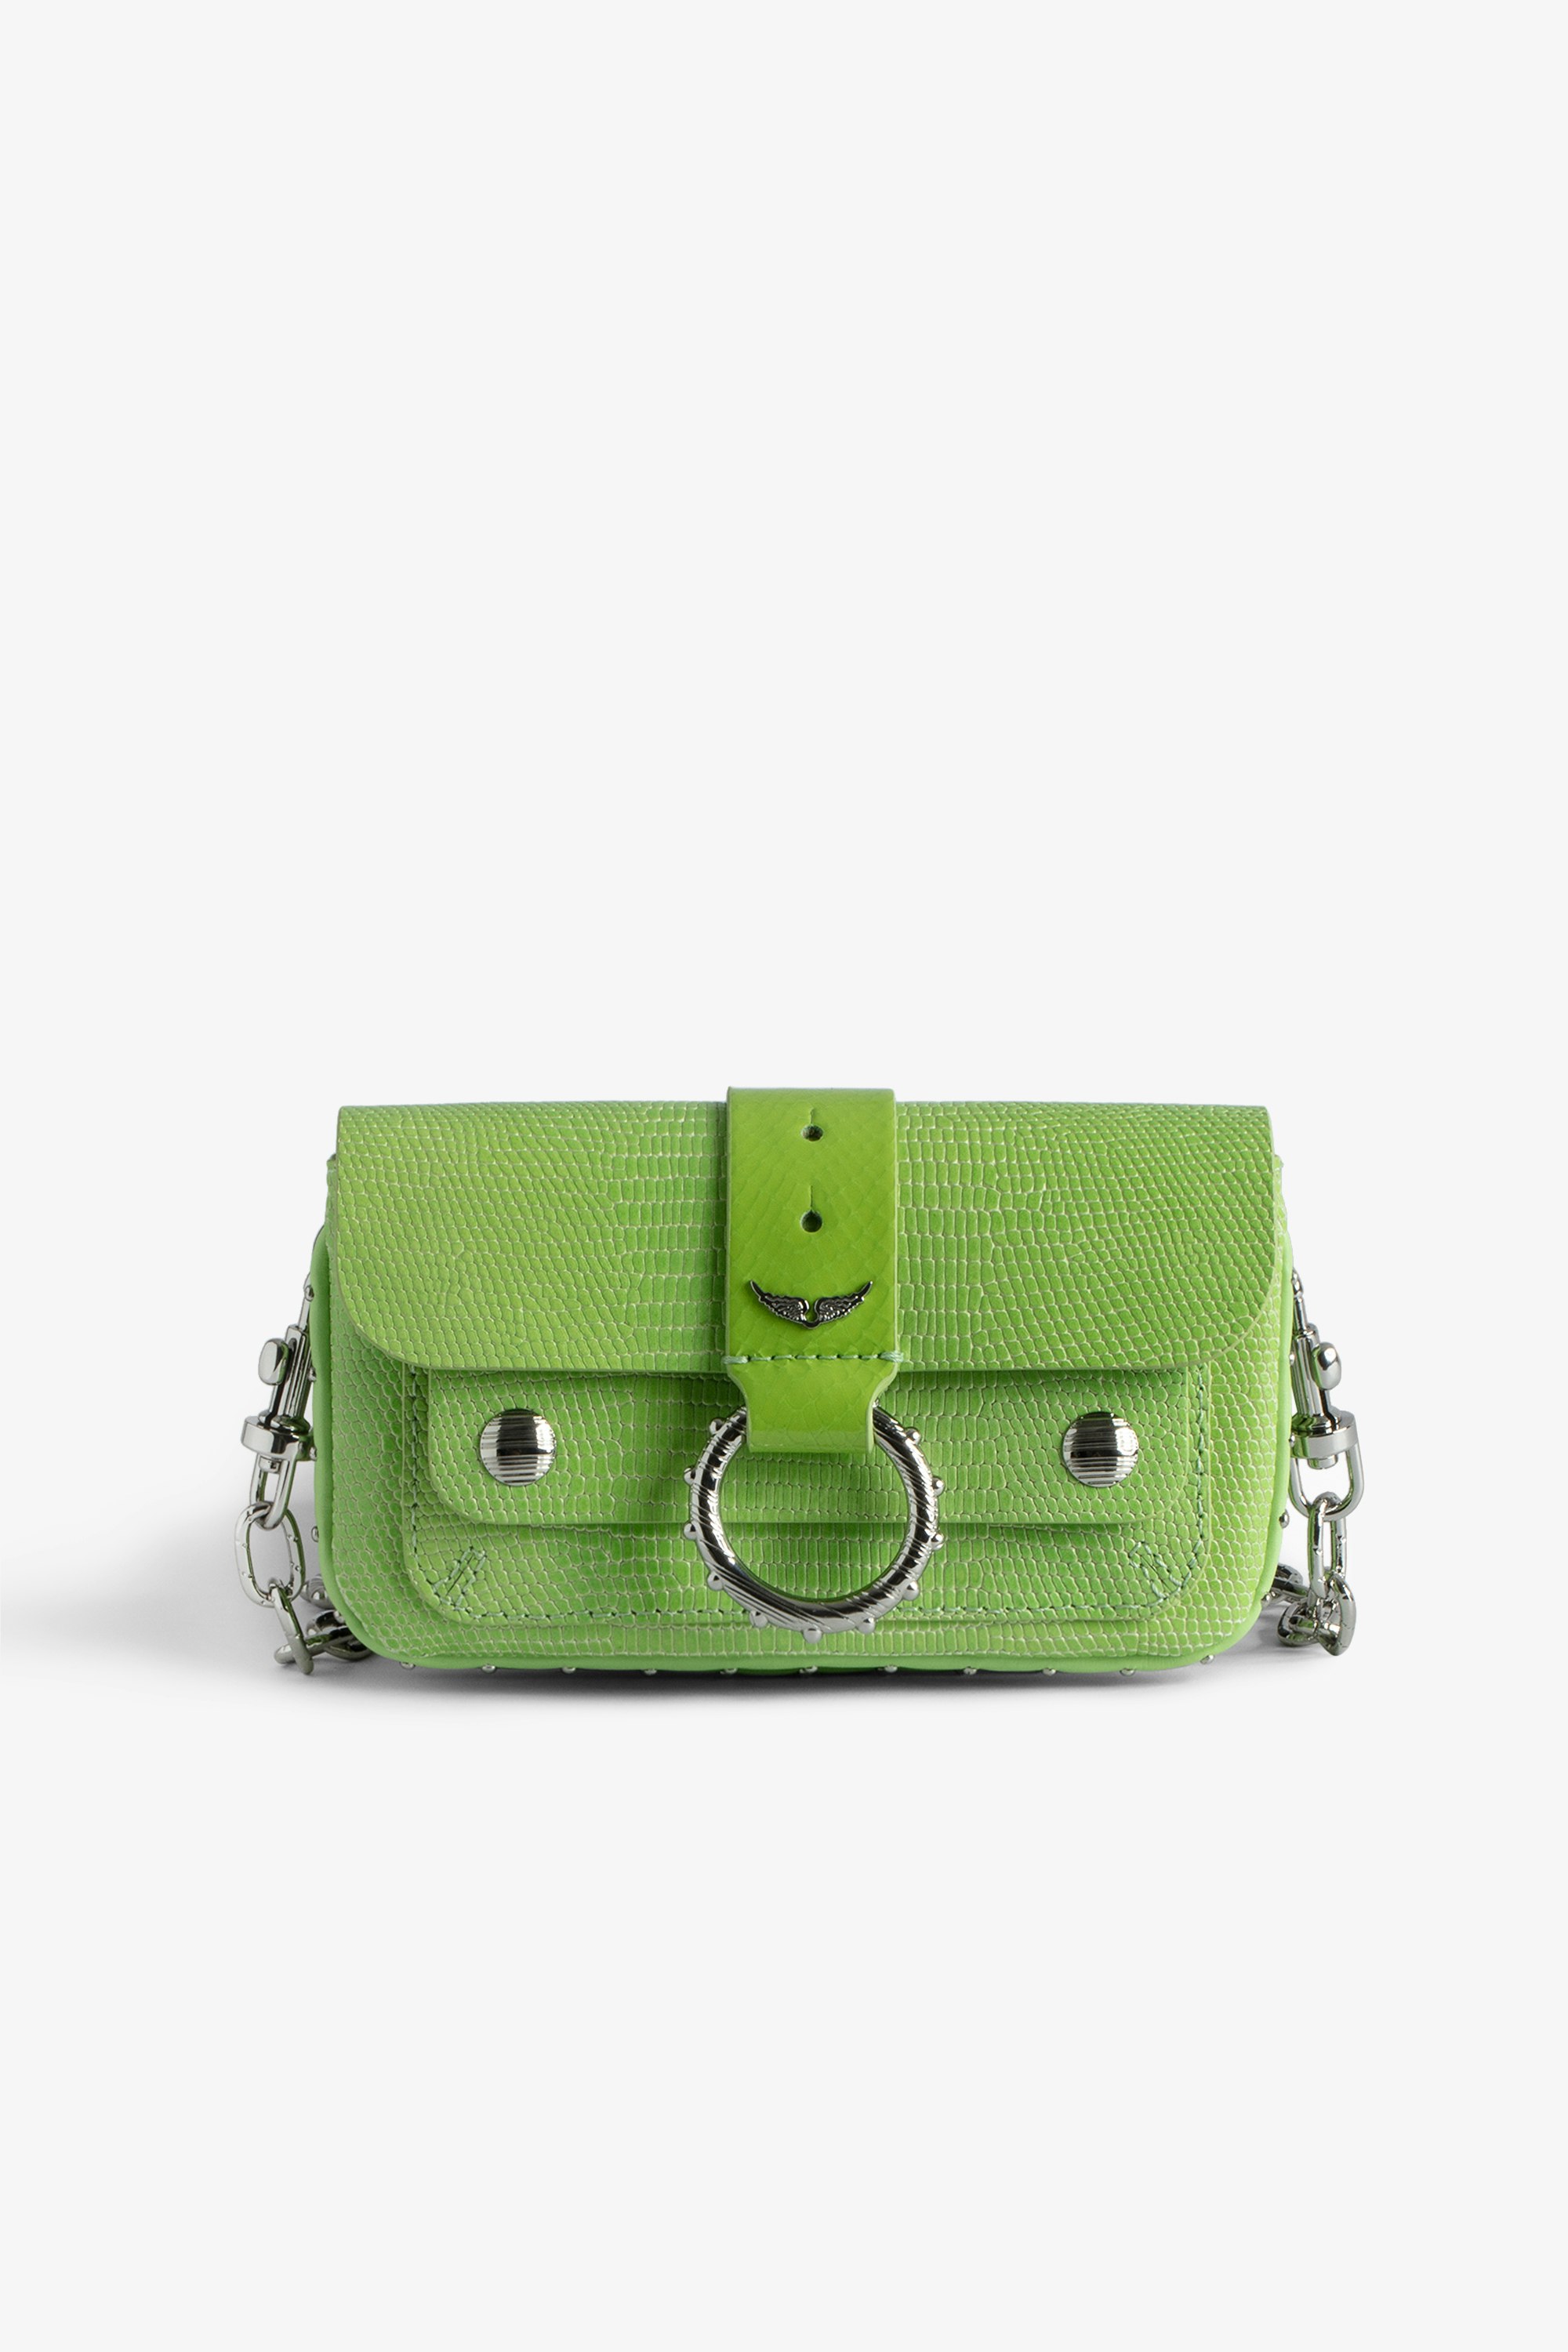 Borsa Kate Wallet Glossy Wild Mini borsa in pelle lucida verde effetto iguana con catena in metallo da donna.